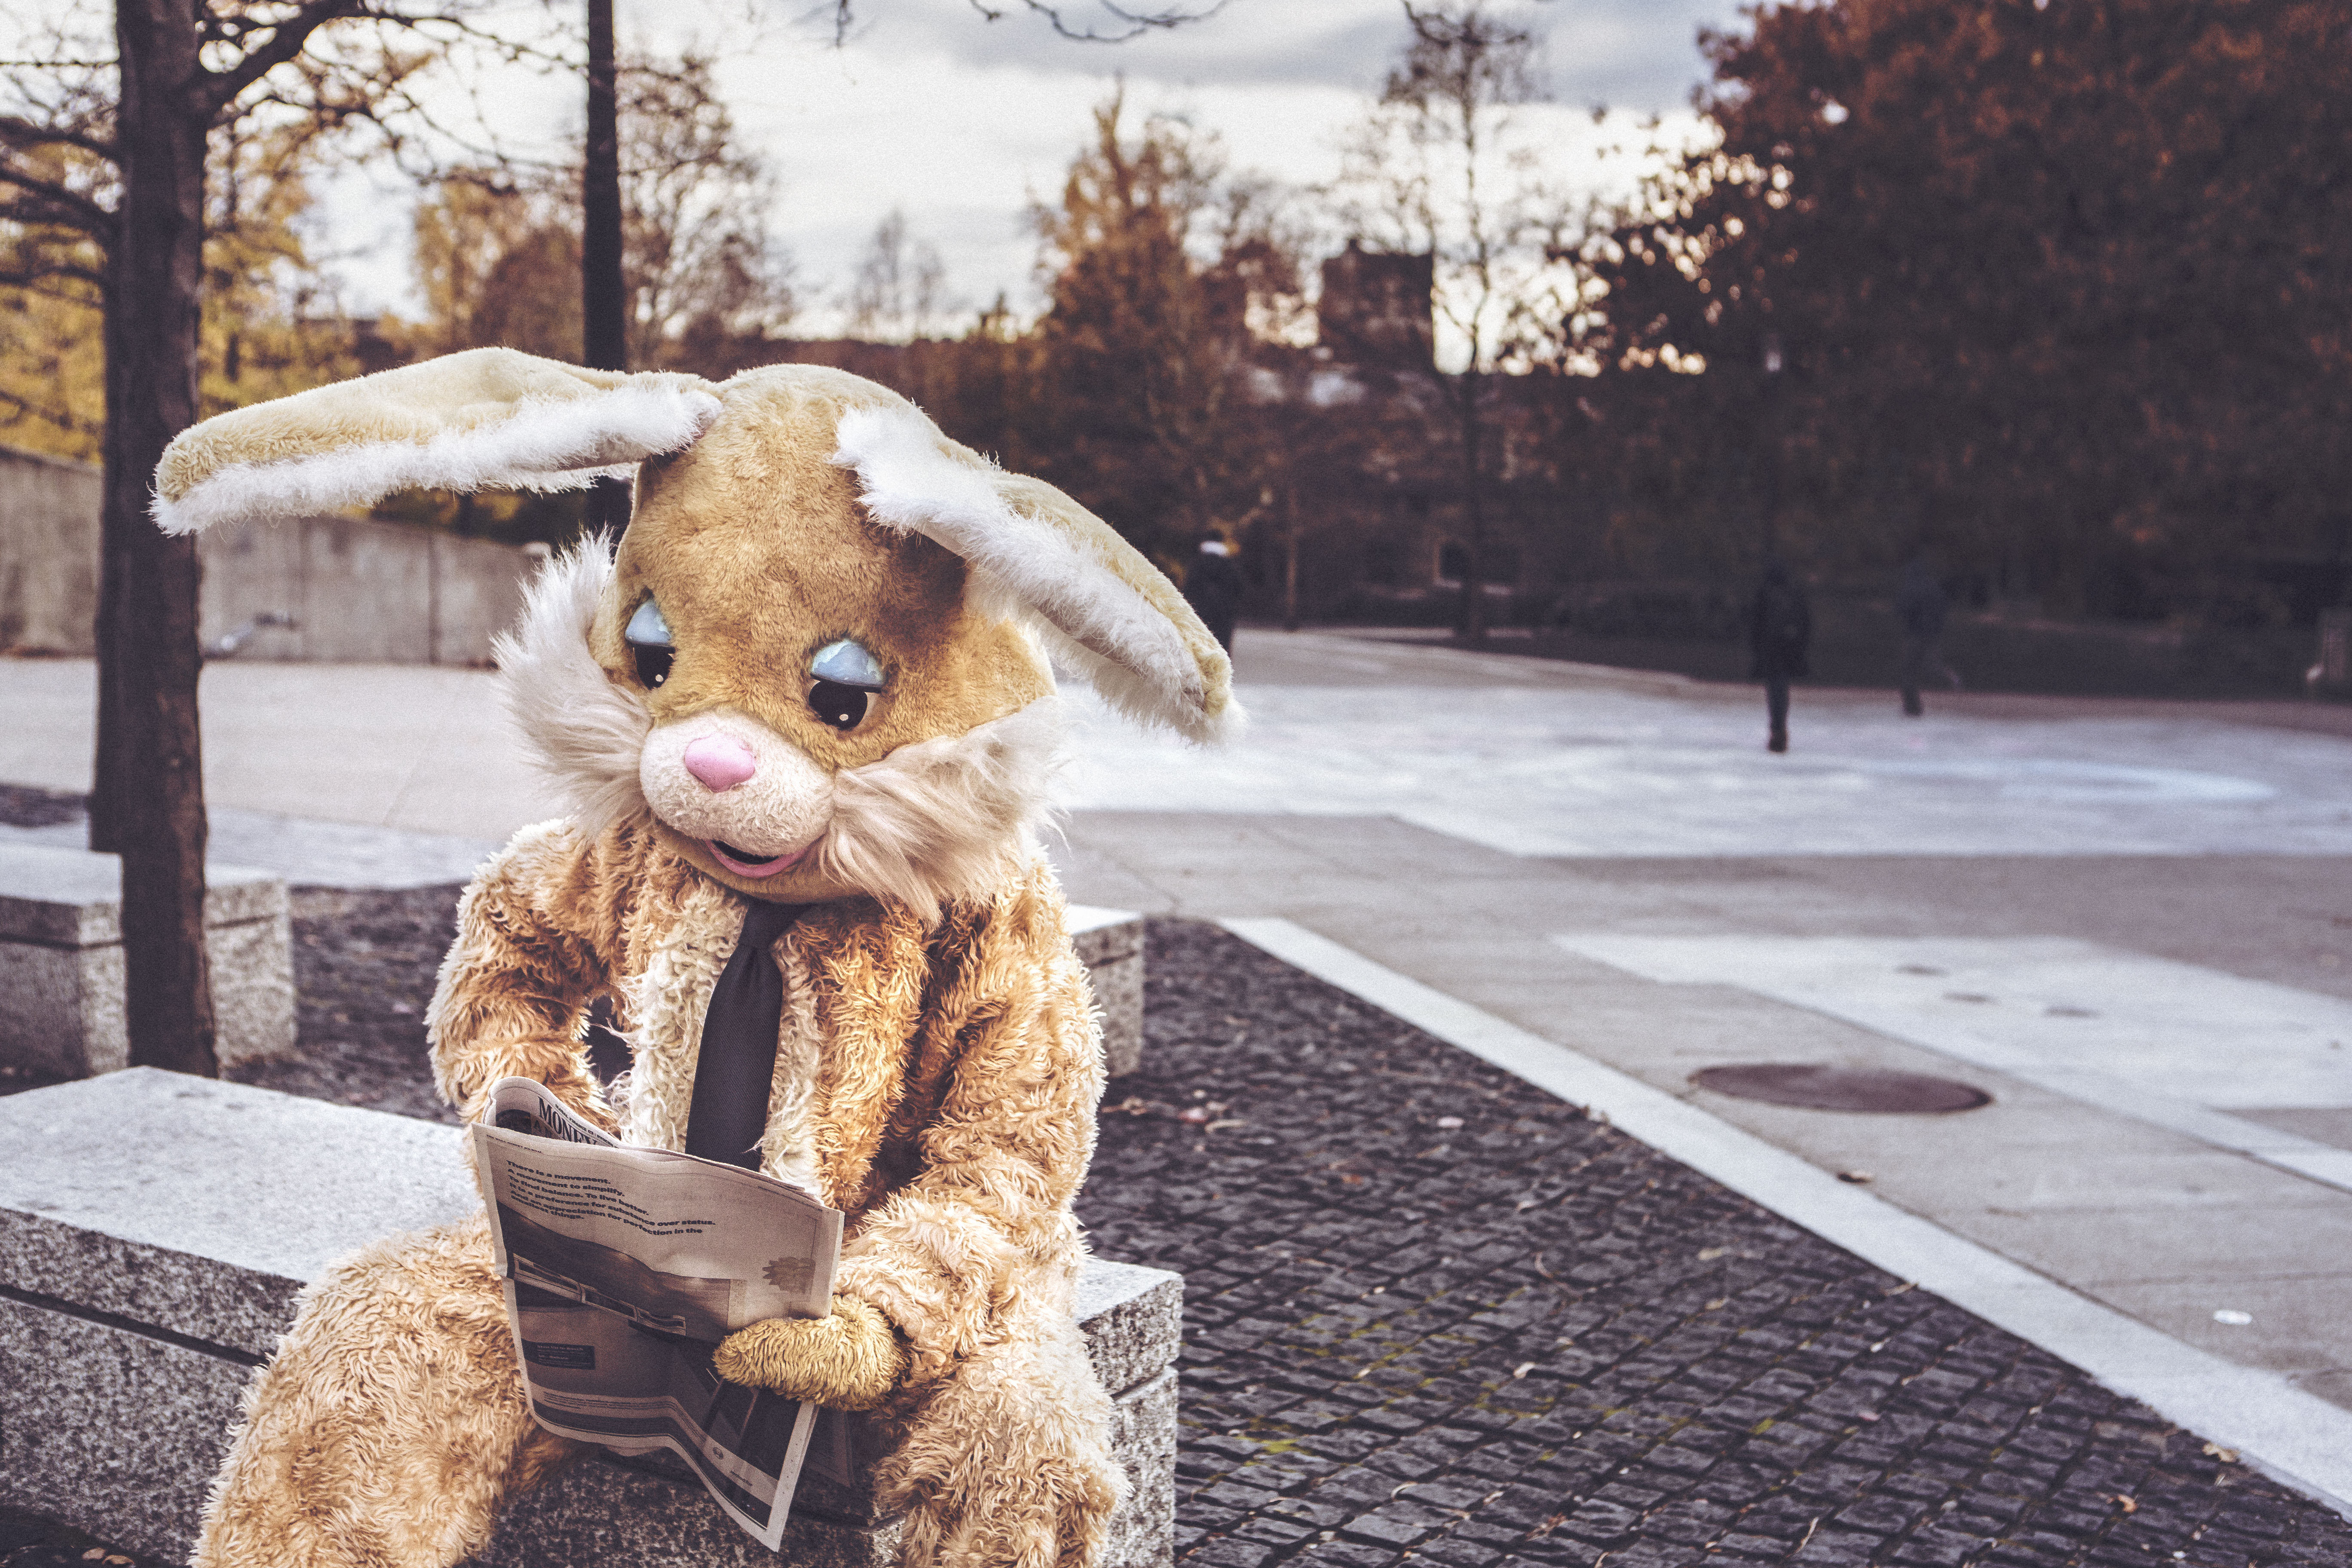 costume, hare, miscellanea, miscellaneous Reading Cellphone FHD pic